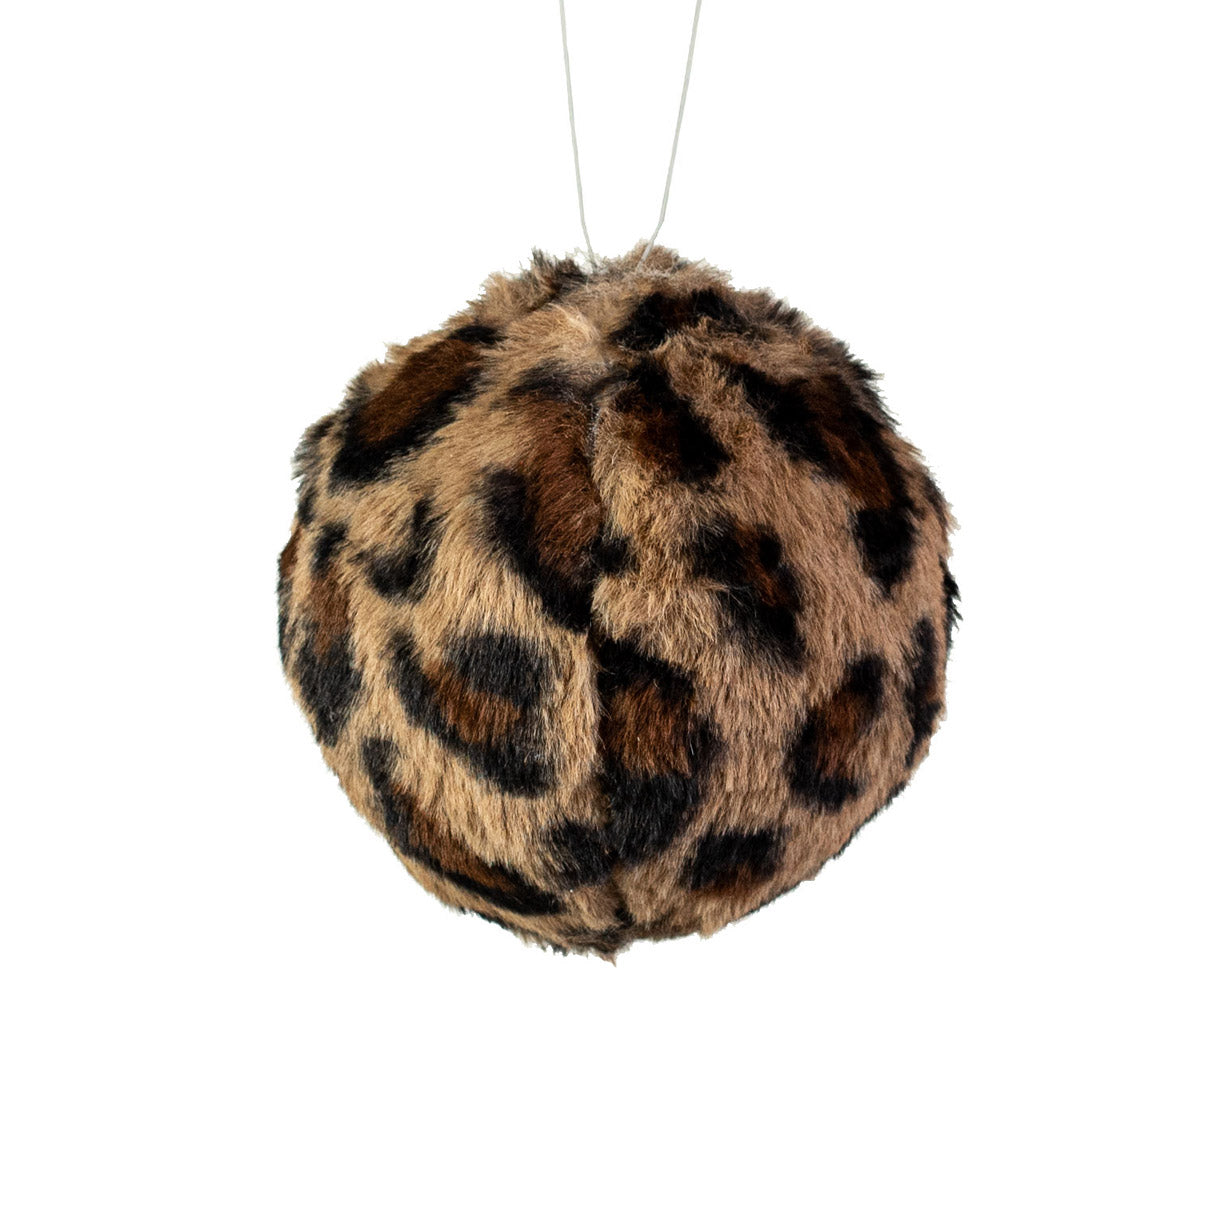 4.5" Cheetah Fur Ball Ornament